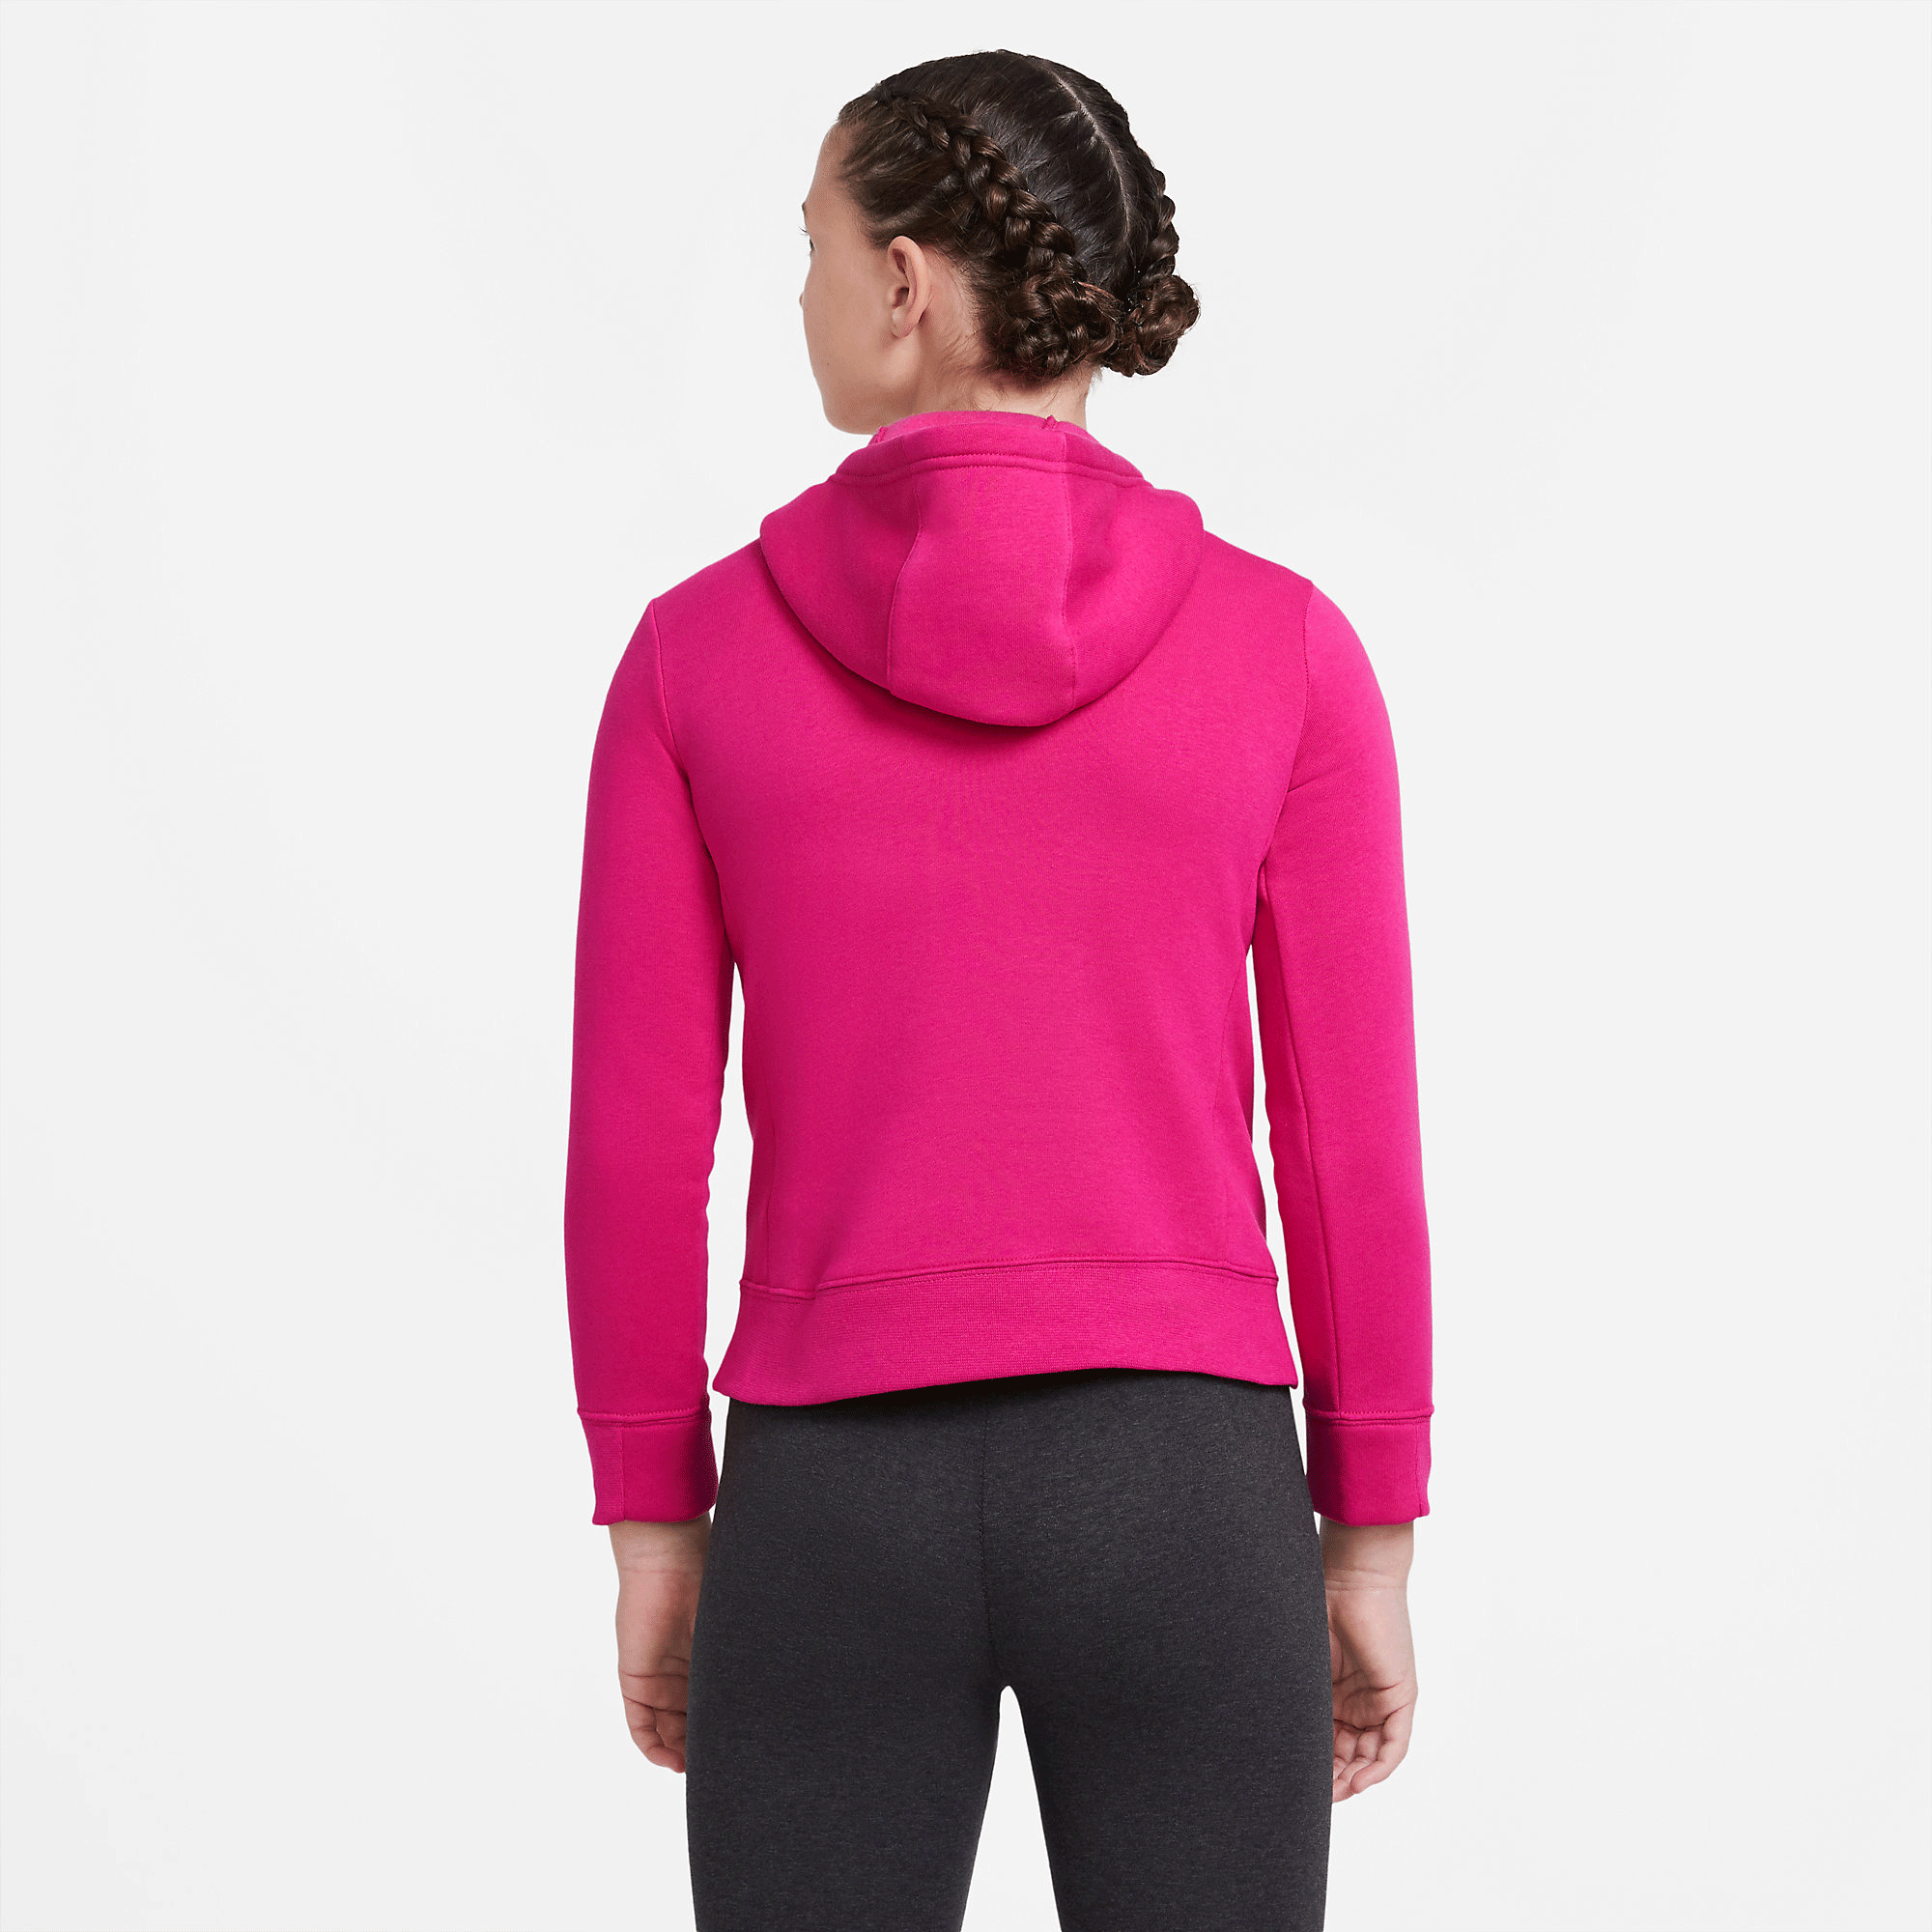 Nike Girls Pullover Hoodie - Pink - Tennisnuts.com